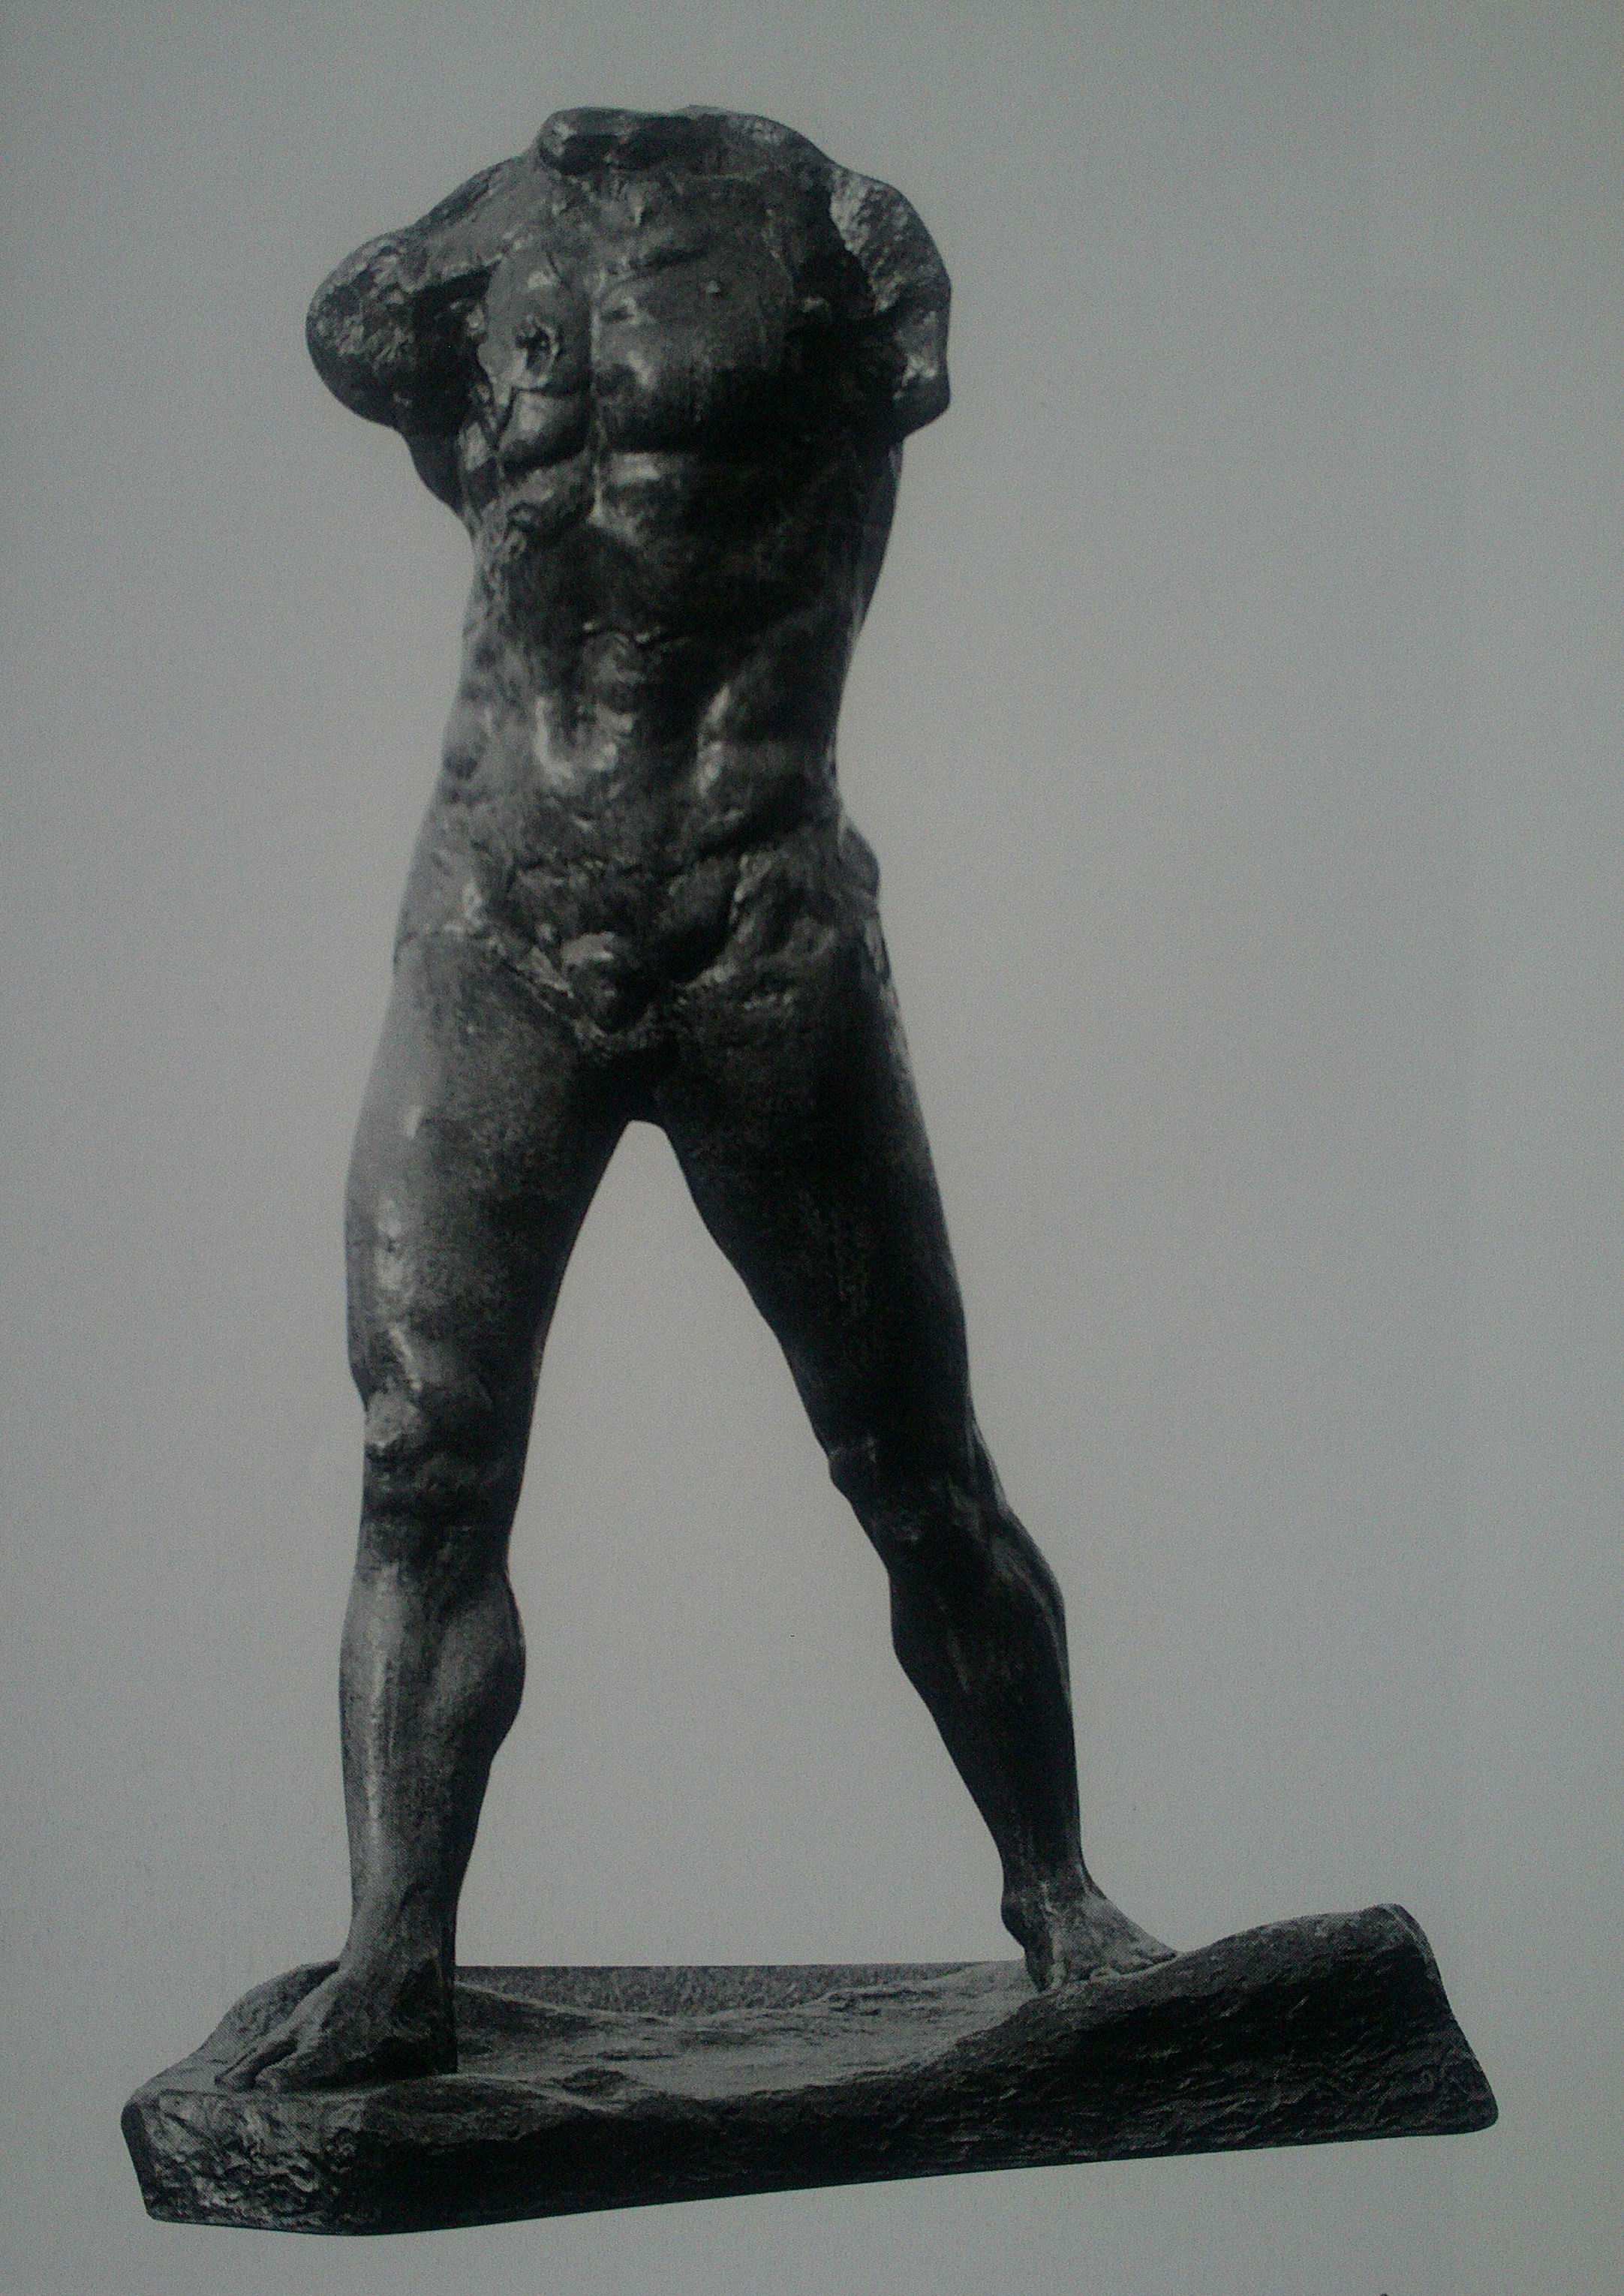 Γλυπτική 19 ου αιώνα Τίτλος: Άνδρας που βαδίζει Καλλιτέχνης: Ροντέν Χρονολογία: 1905 Υλικό: Χαλκός Περιγραφή: ο Ροντέν θαύµαζε το ανθρώπινο σώµα όταν ήταν σε κίνηση.